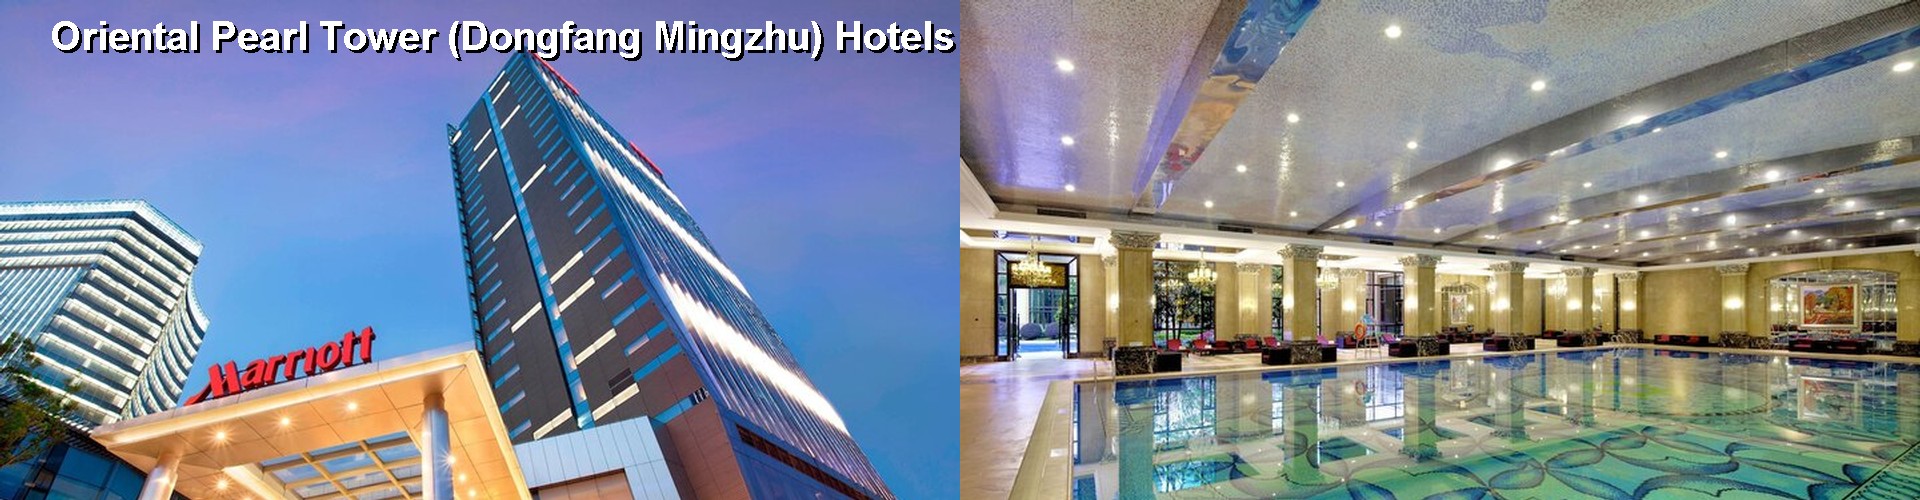 5 Best Hotels near Oriental Pearl Tower (Dongfang Mingzhu)